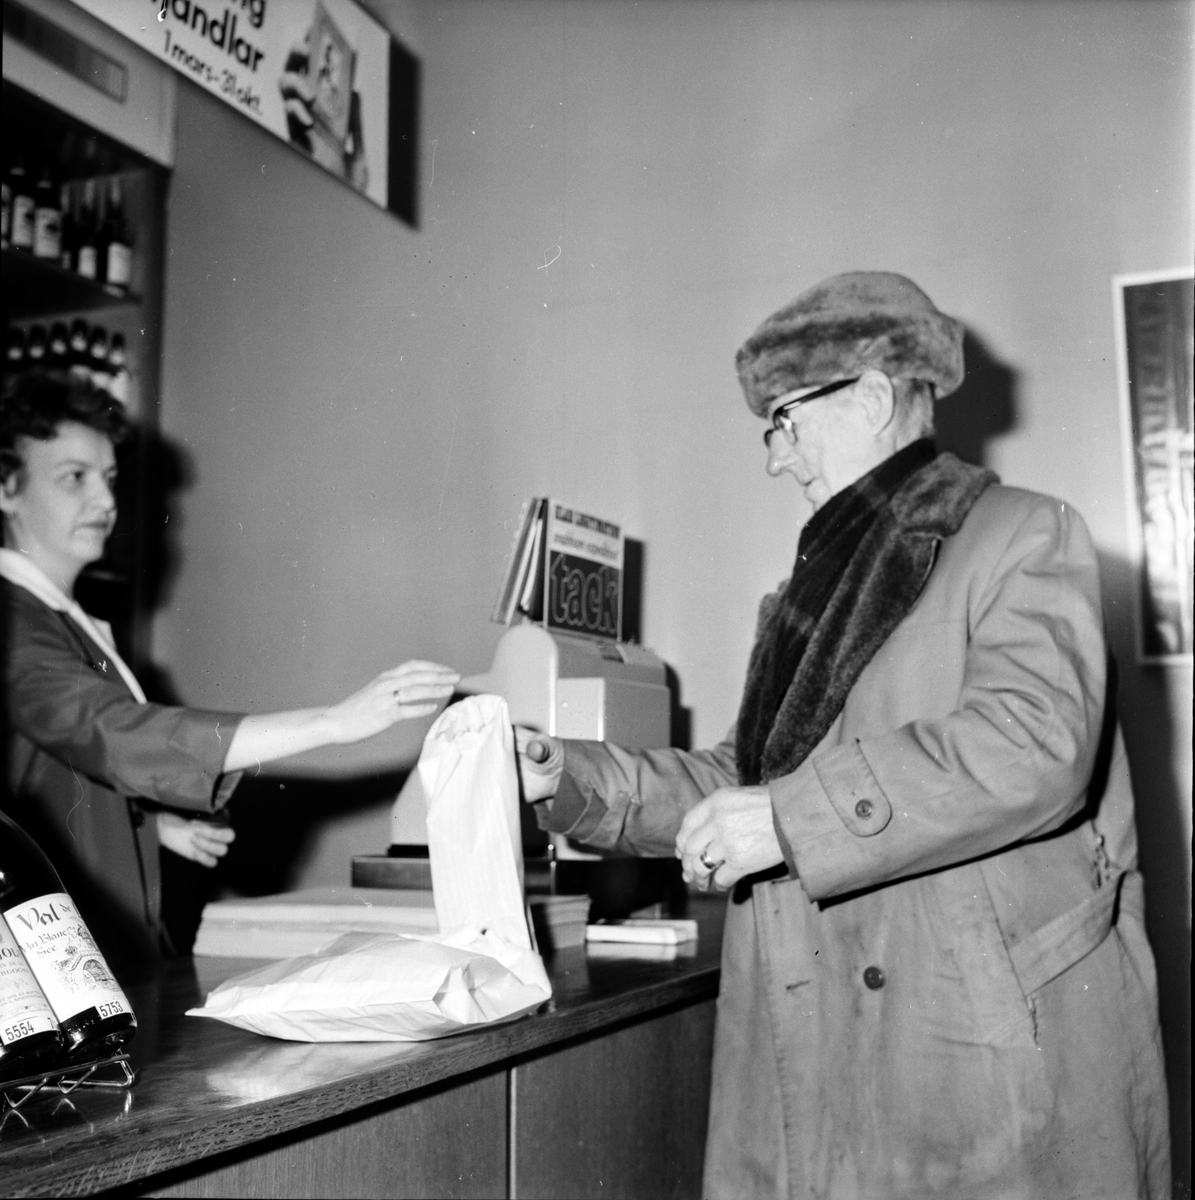 Systemet,
Registreringen i Bollnäsbutiken,
2 Mars 1967